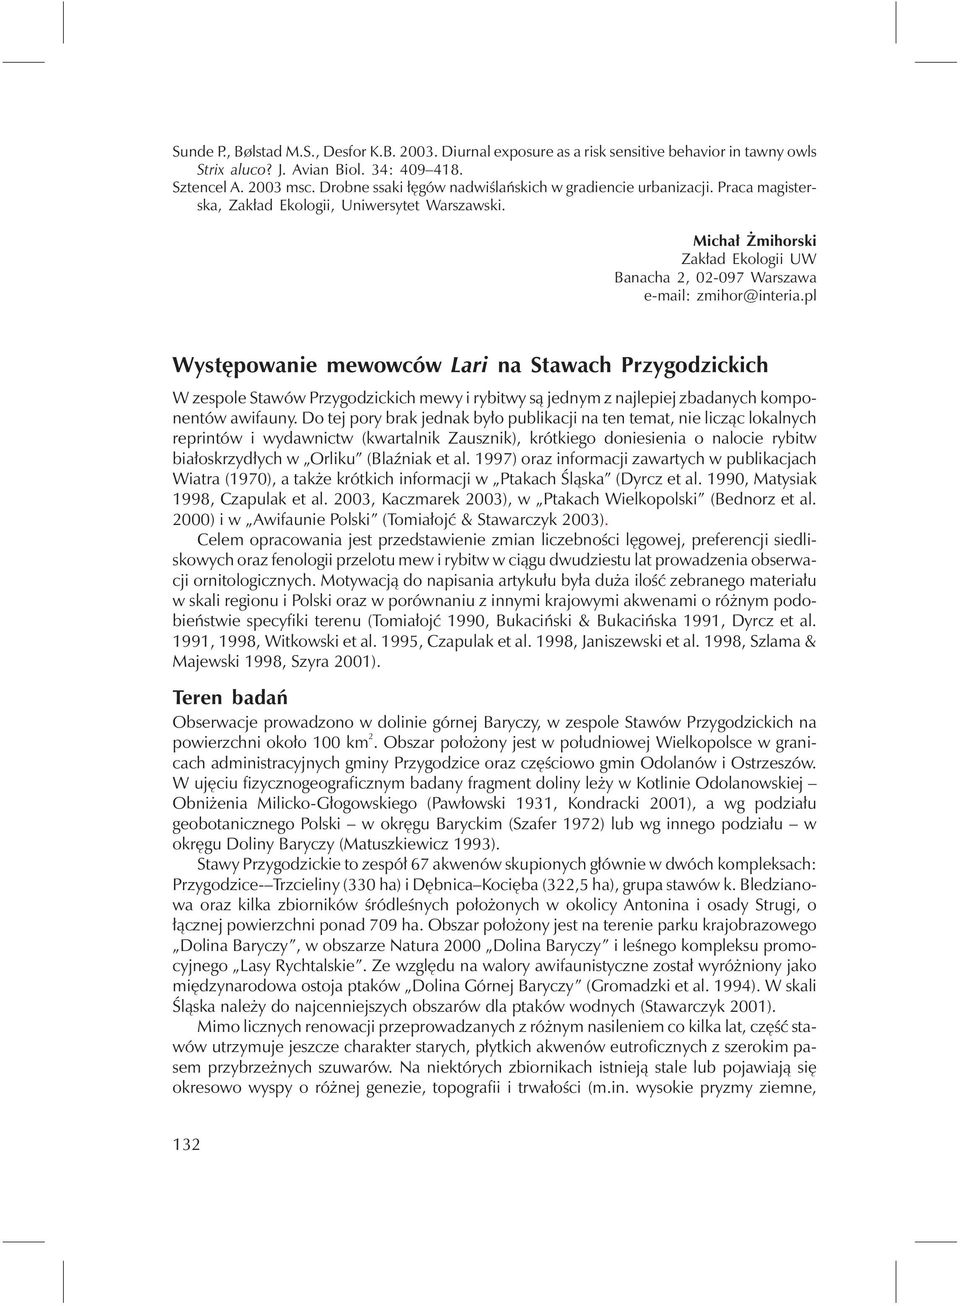 Michał Żmihorski Zakład Ekologii UW Banacha 2, 02-097 Warszawa e-mail: zmihor@interia.